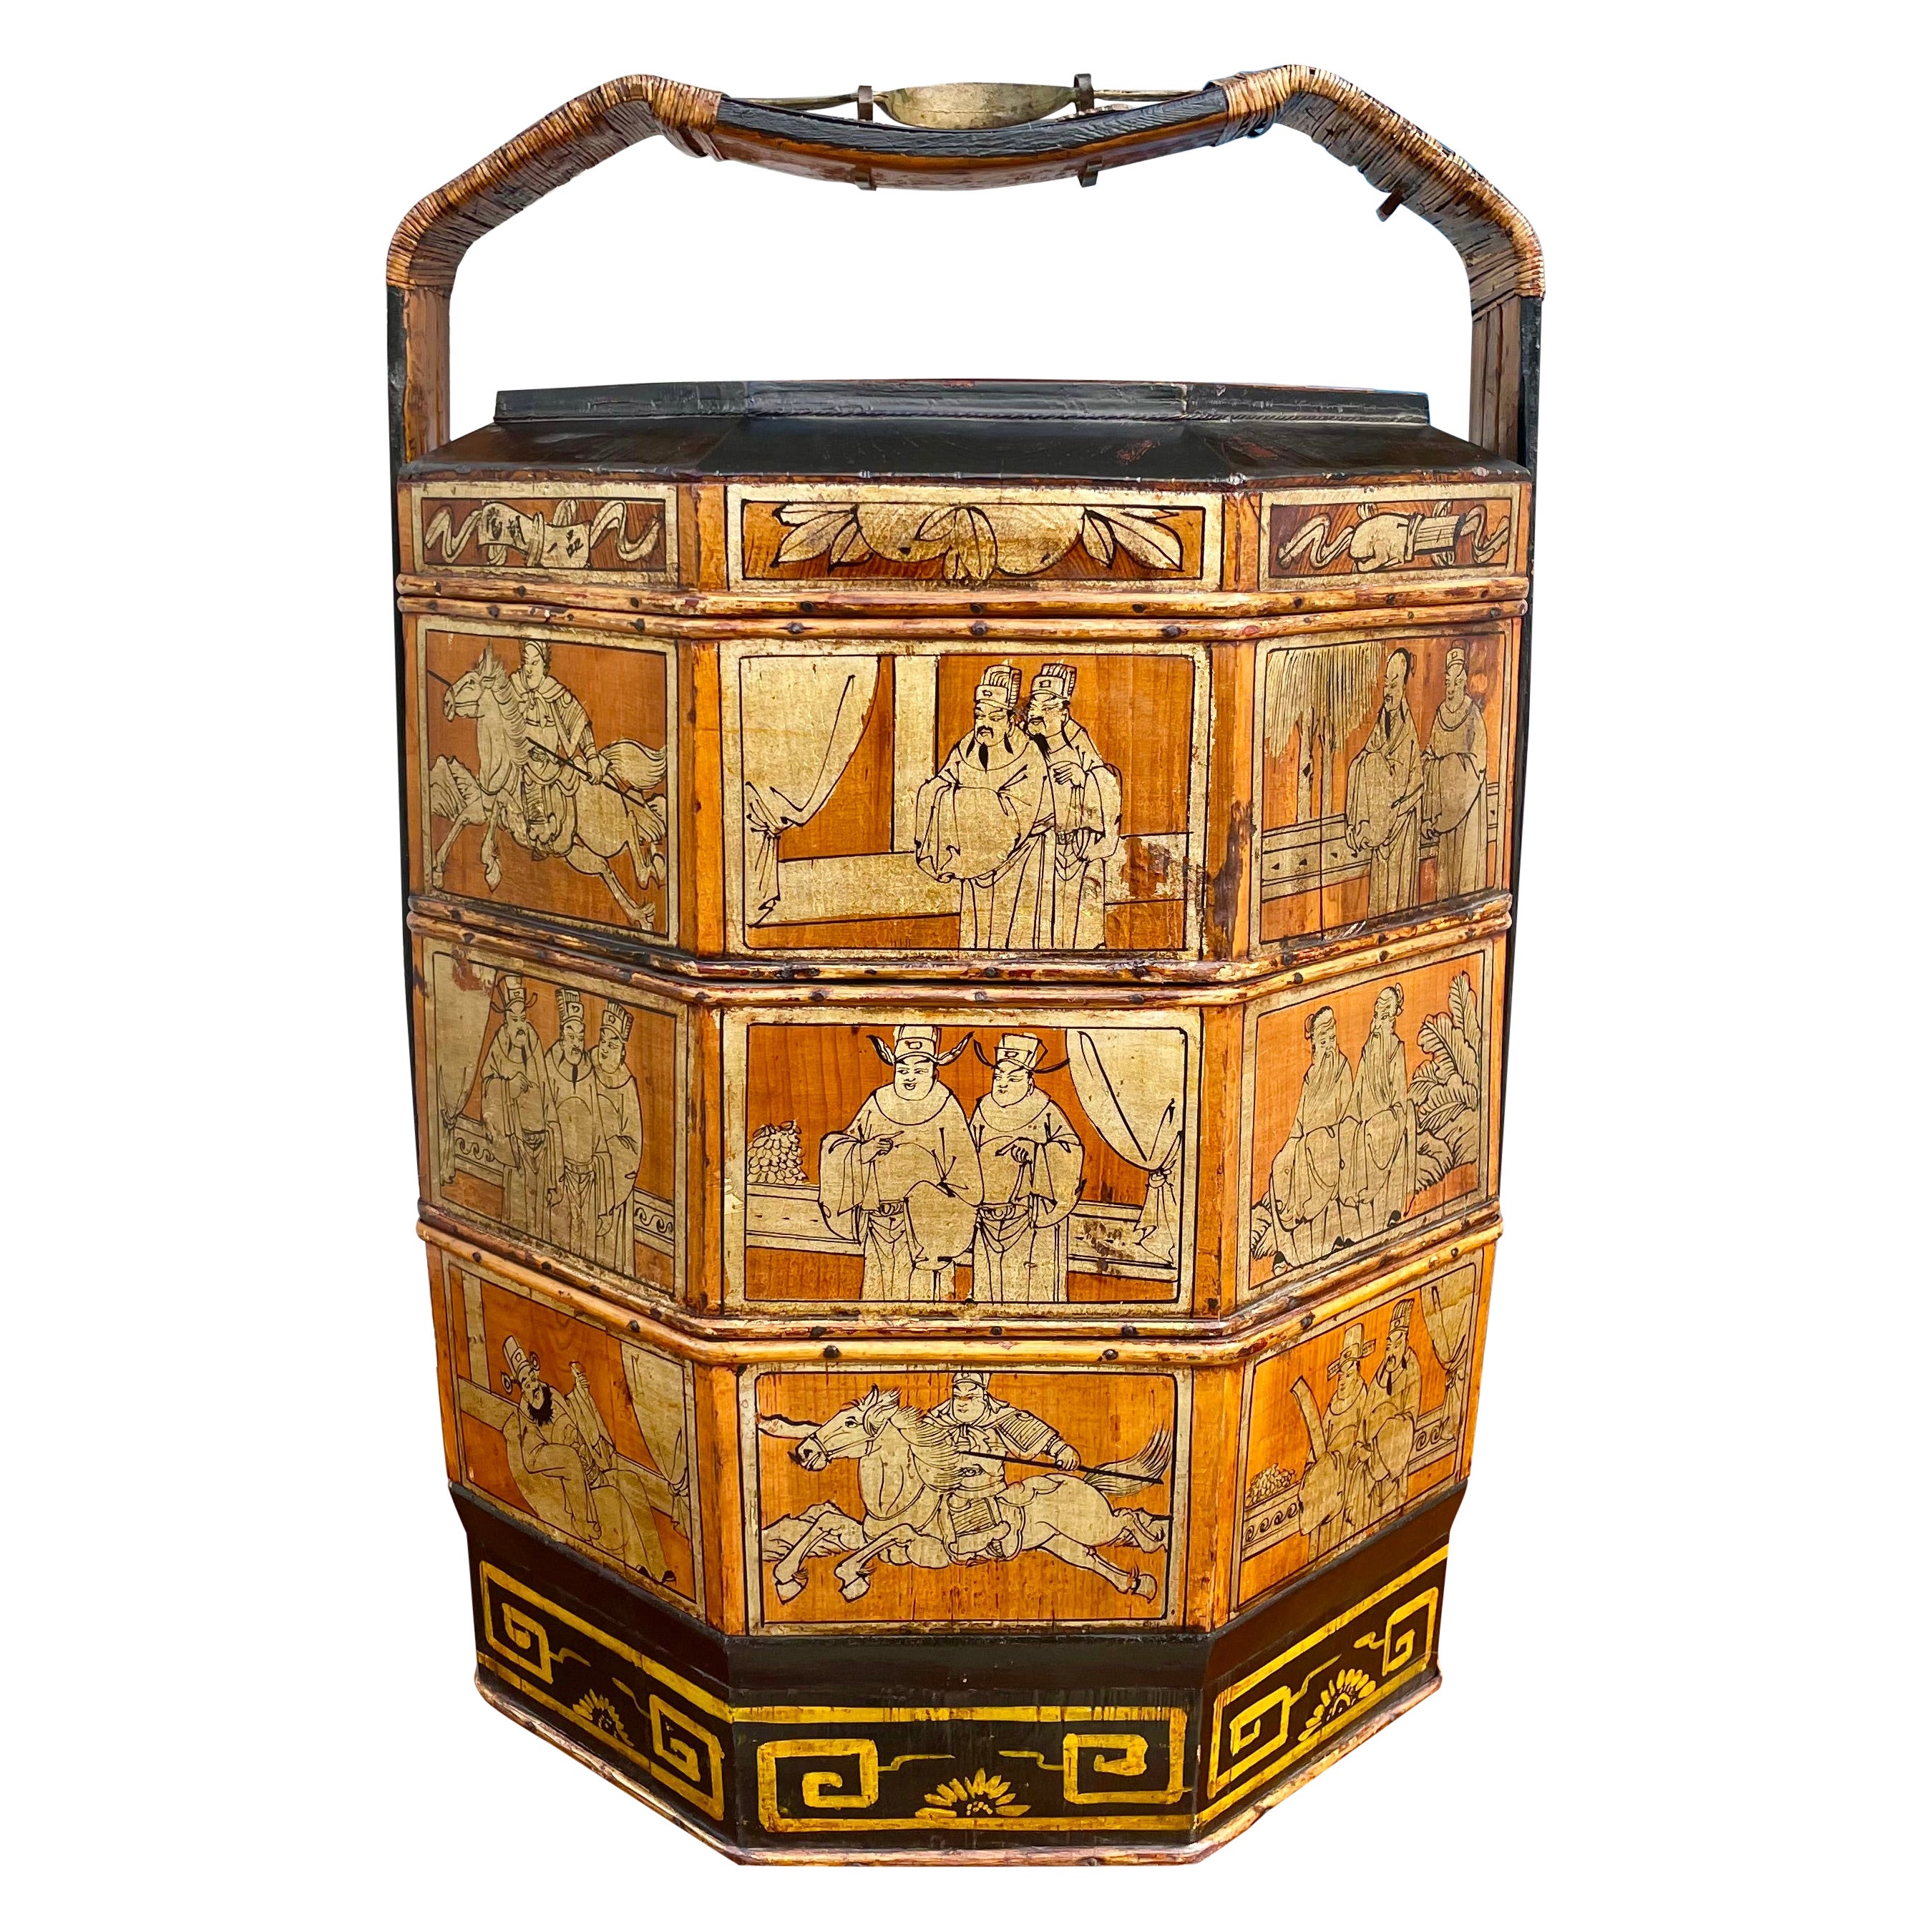 Vintage Chinese Wedding Basket